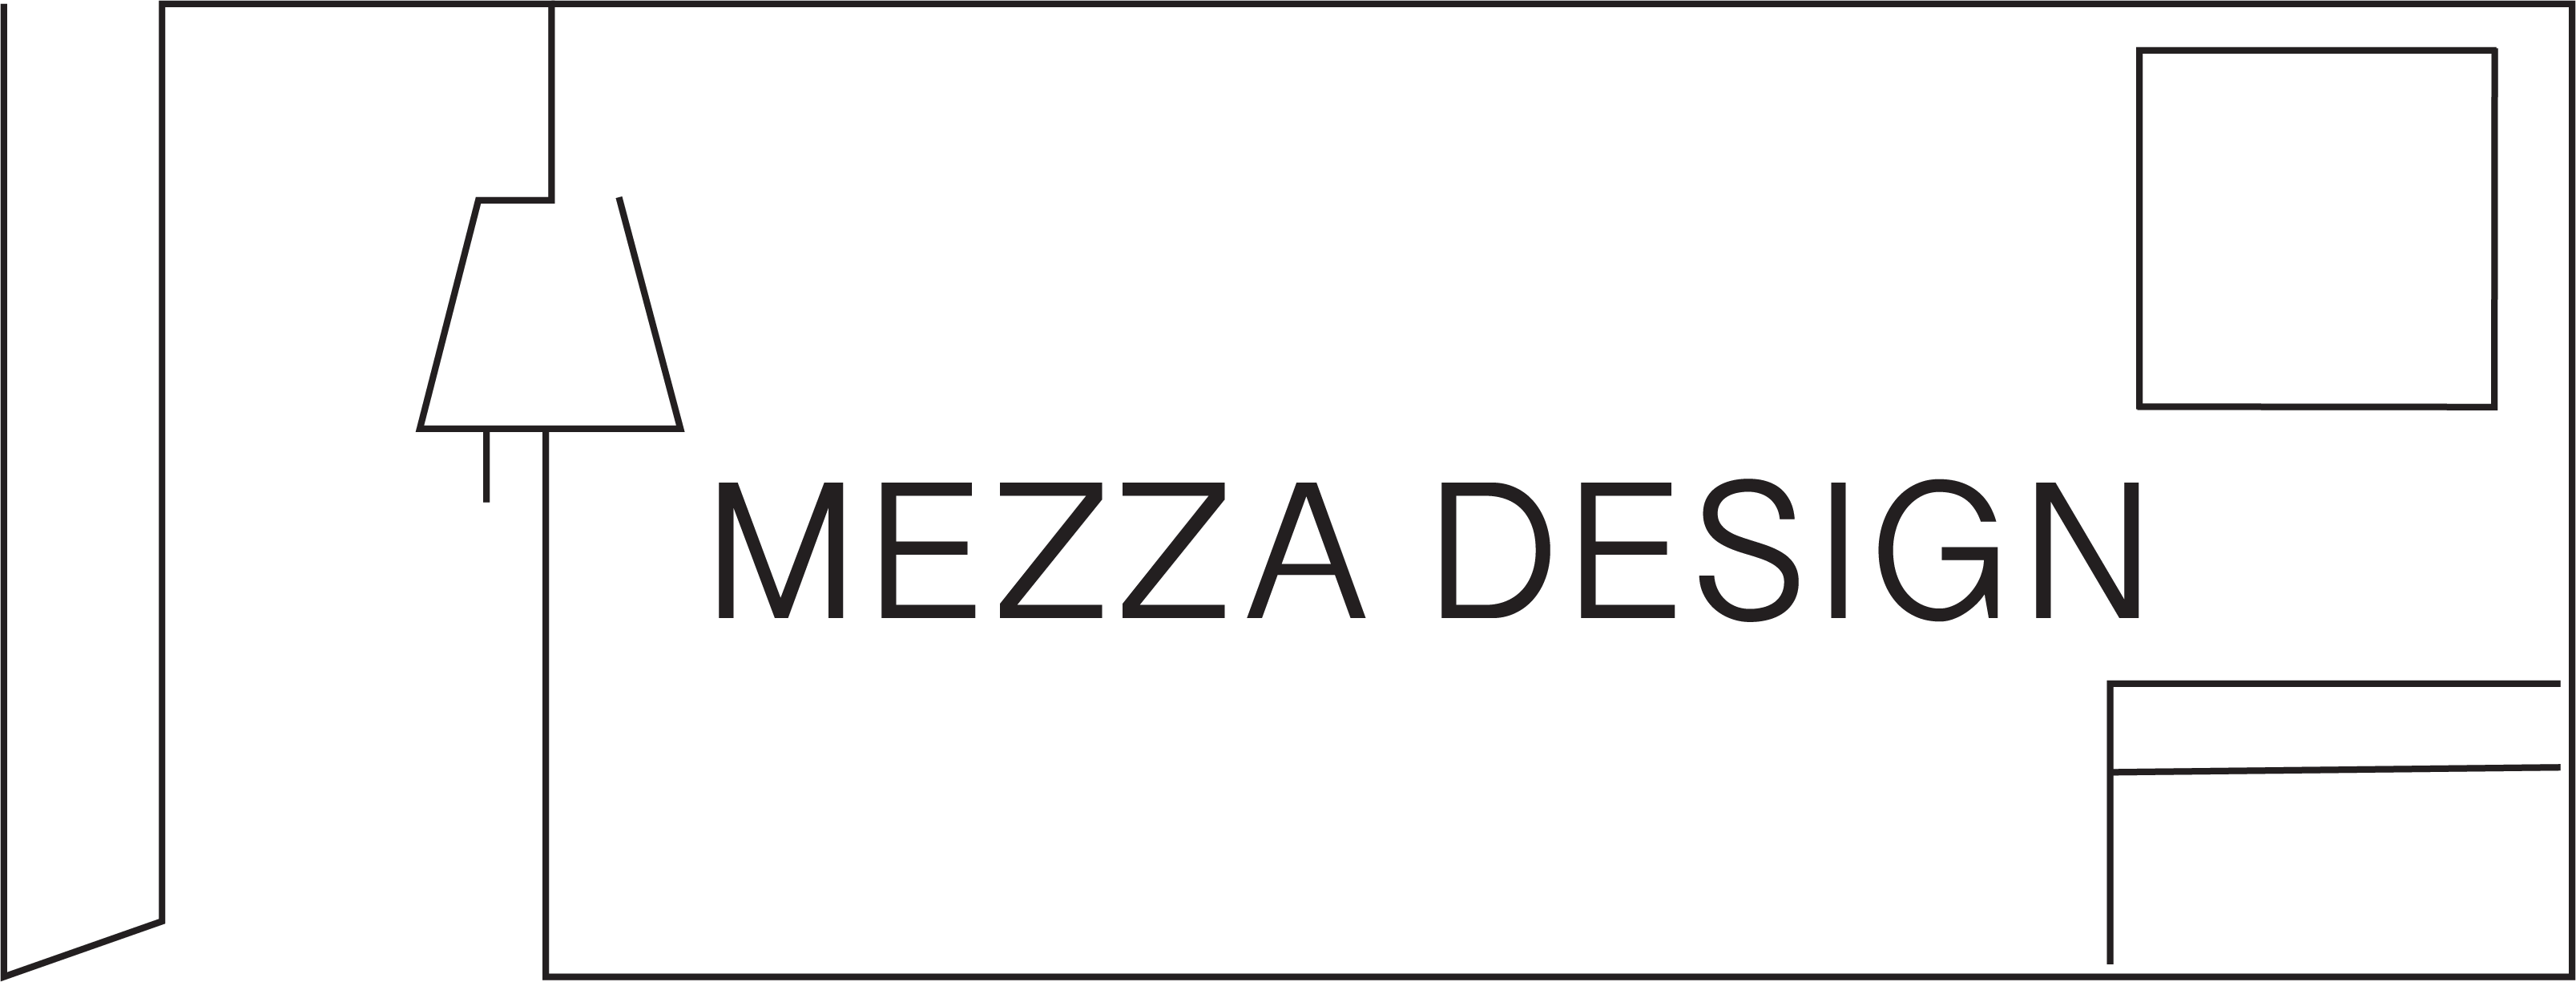 Mezza Design